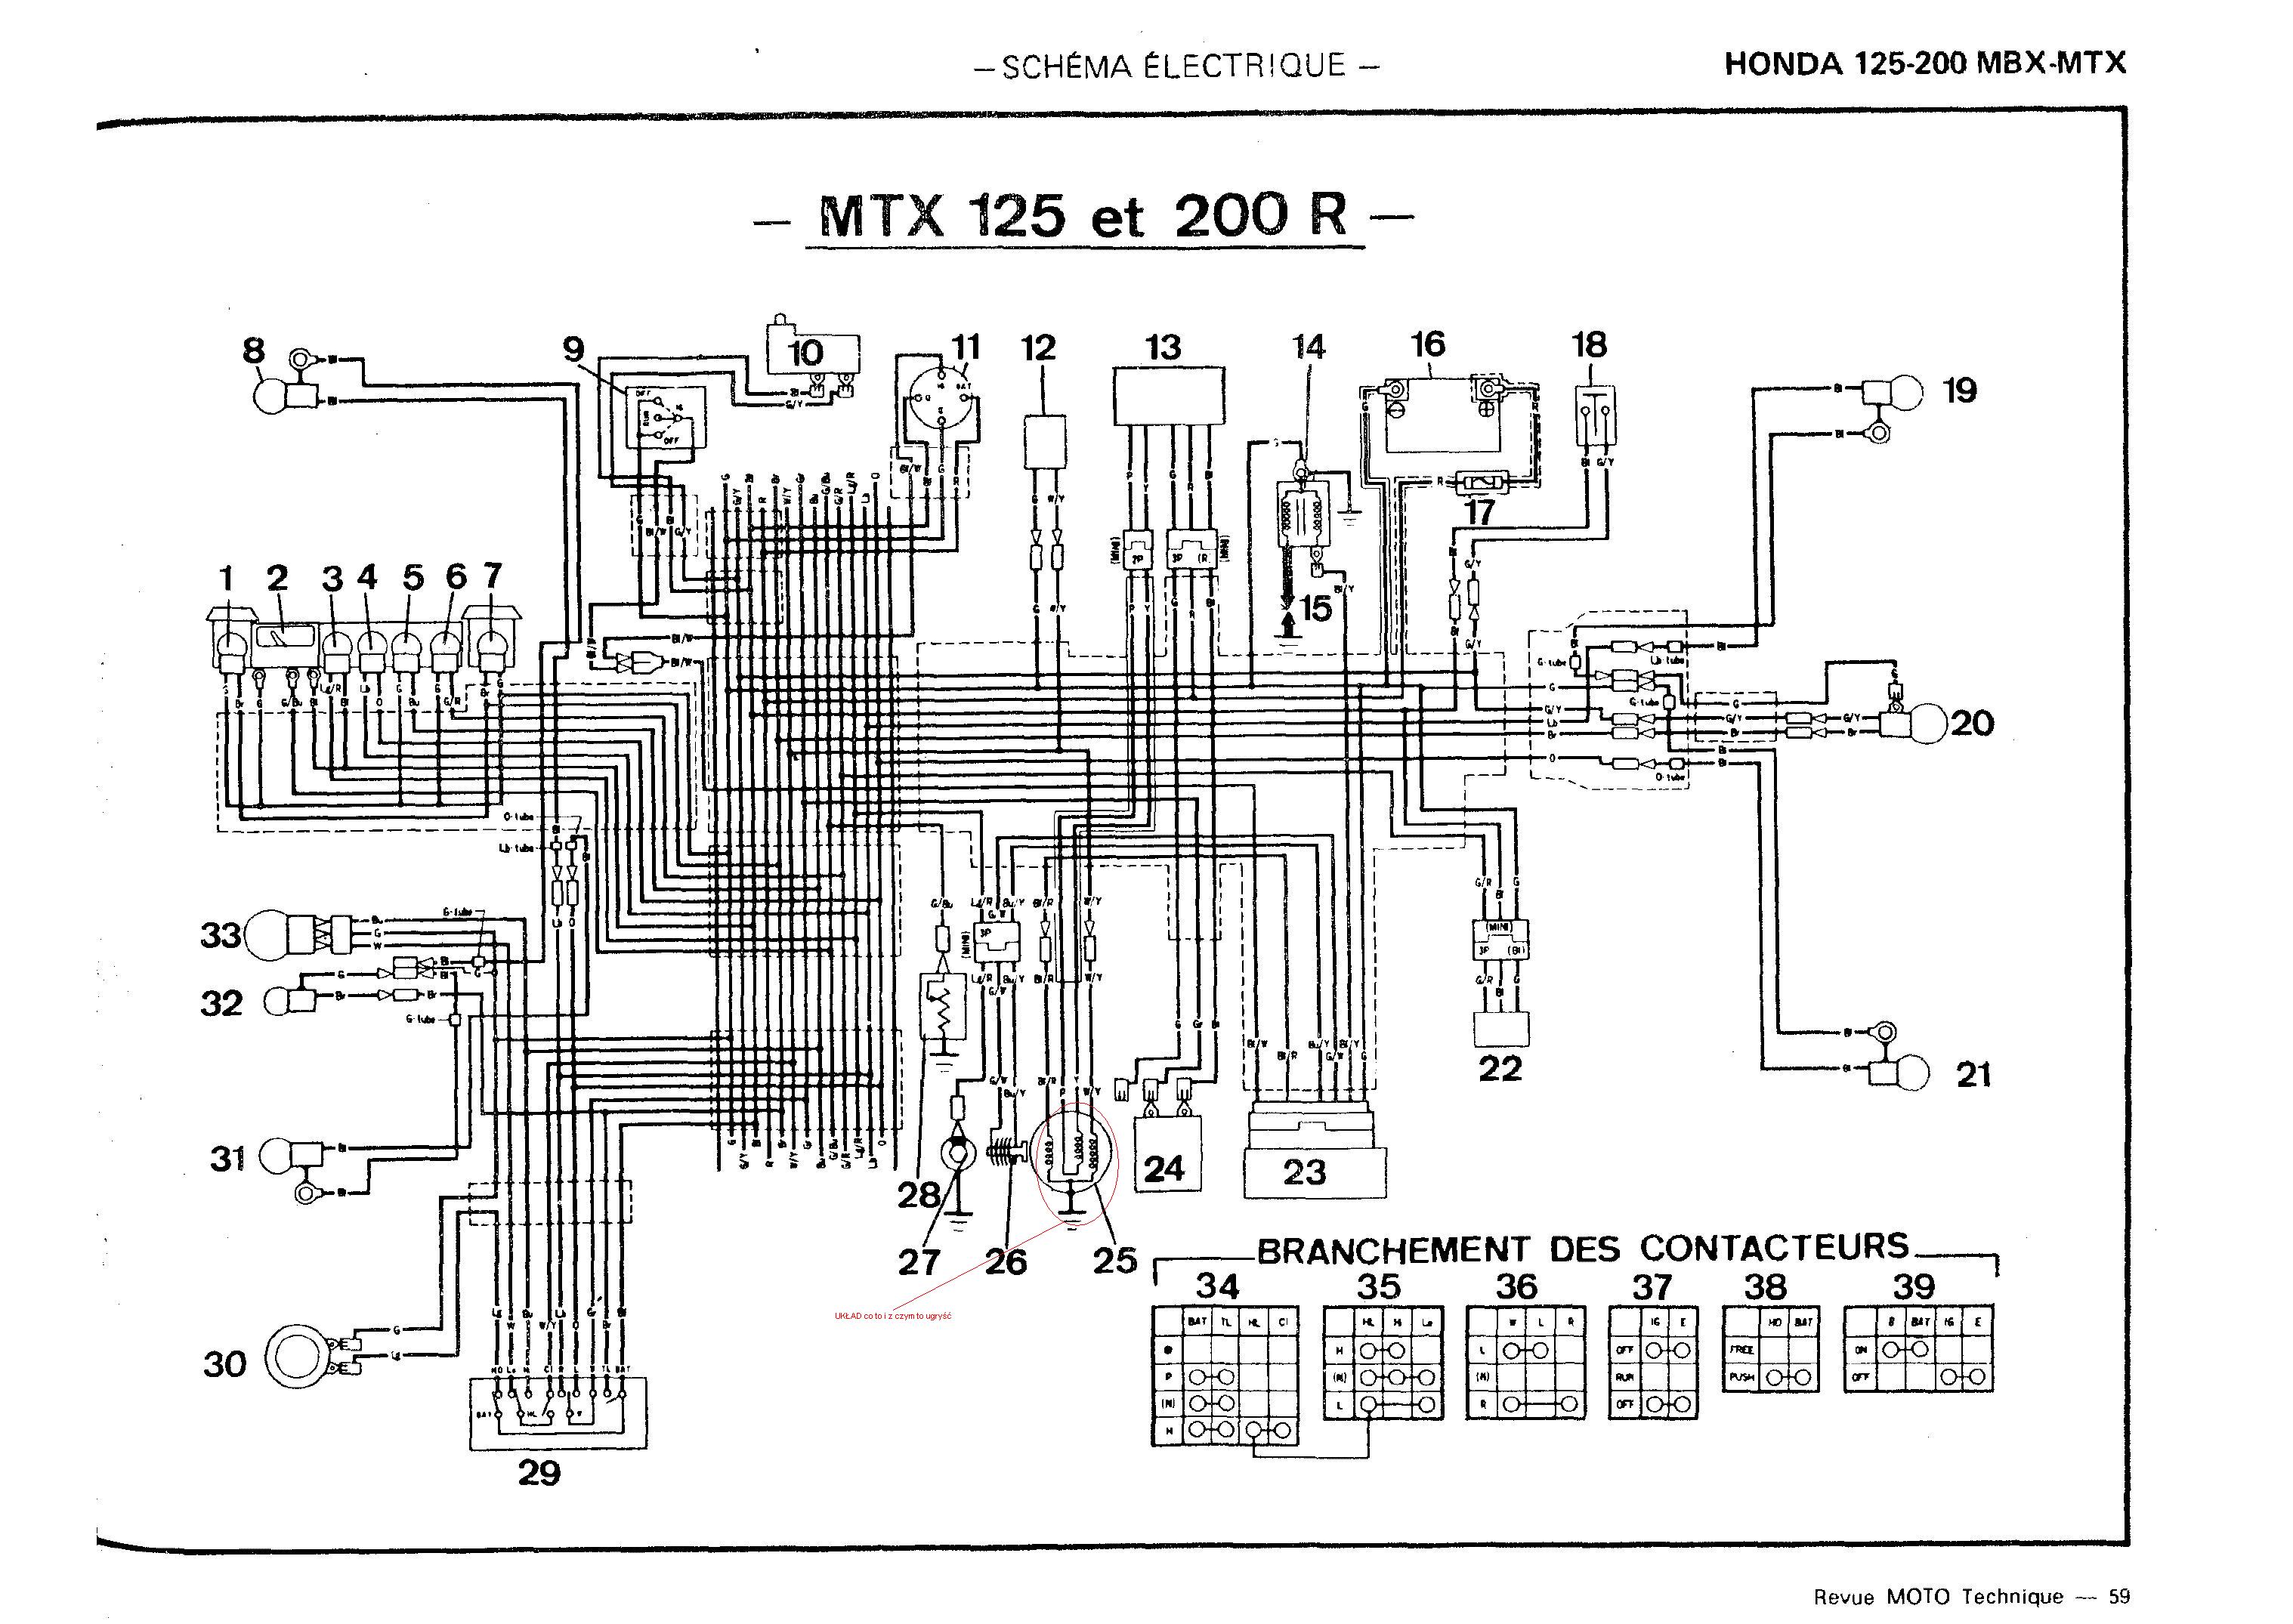 Honda MBX 125 poszukuję schematu elektroda.pl